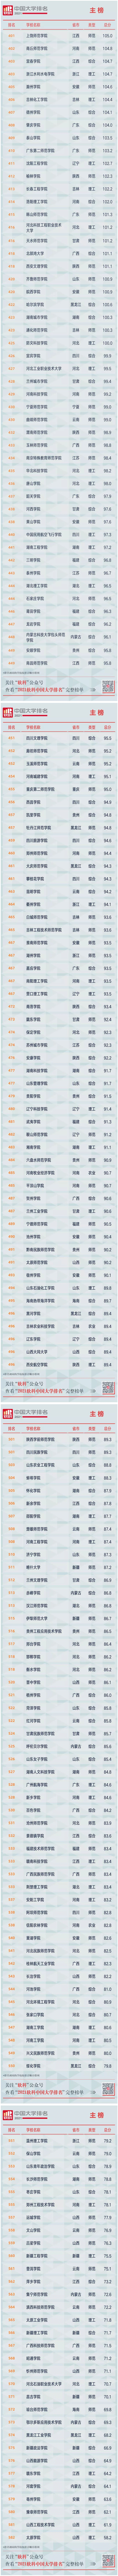 2021年软科中国大学排名600强榜单（主榜）